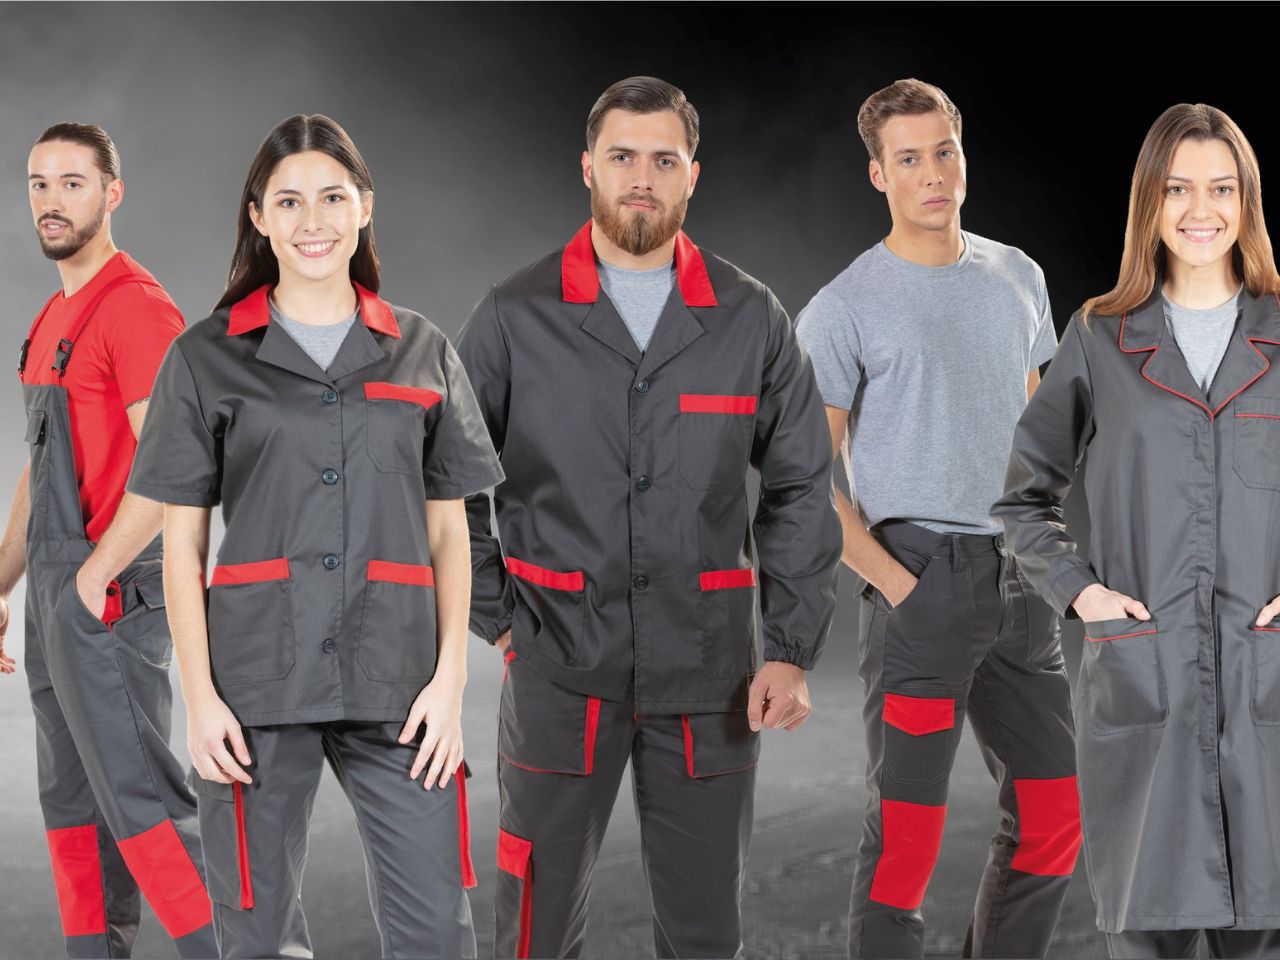 Diversos trabalhadores da área da indústria vestidos com fardas e uniformes personalizados fabricados pela Unifardas